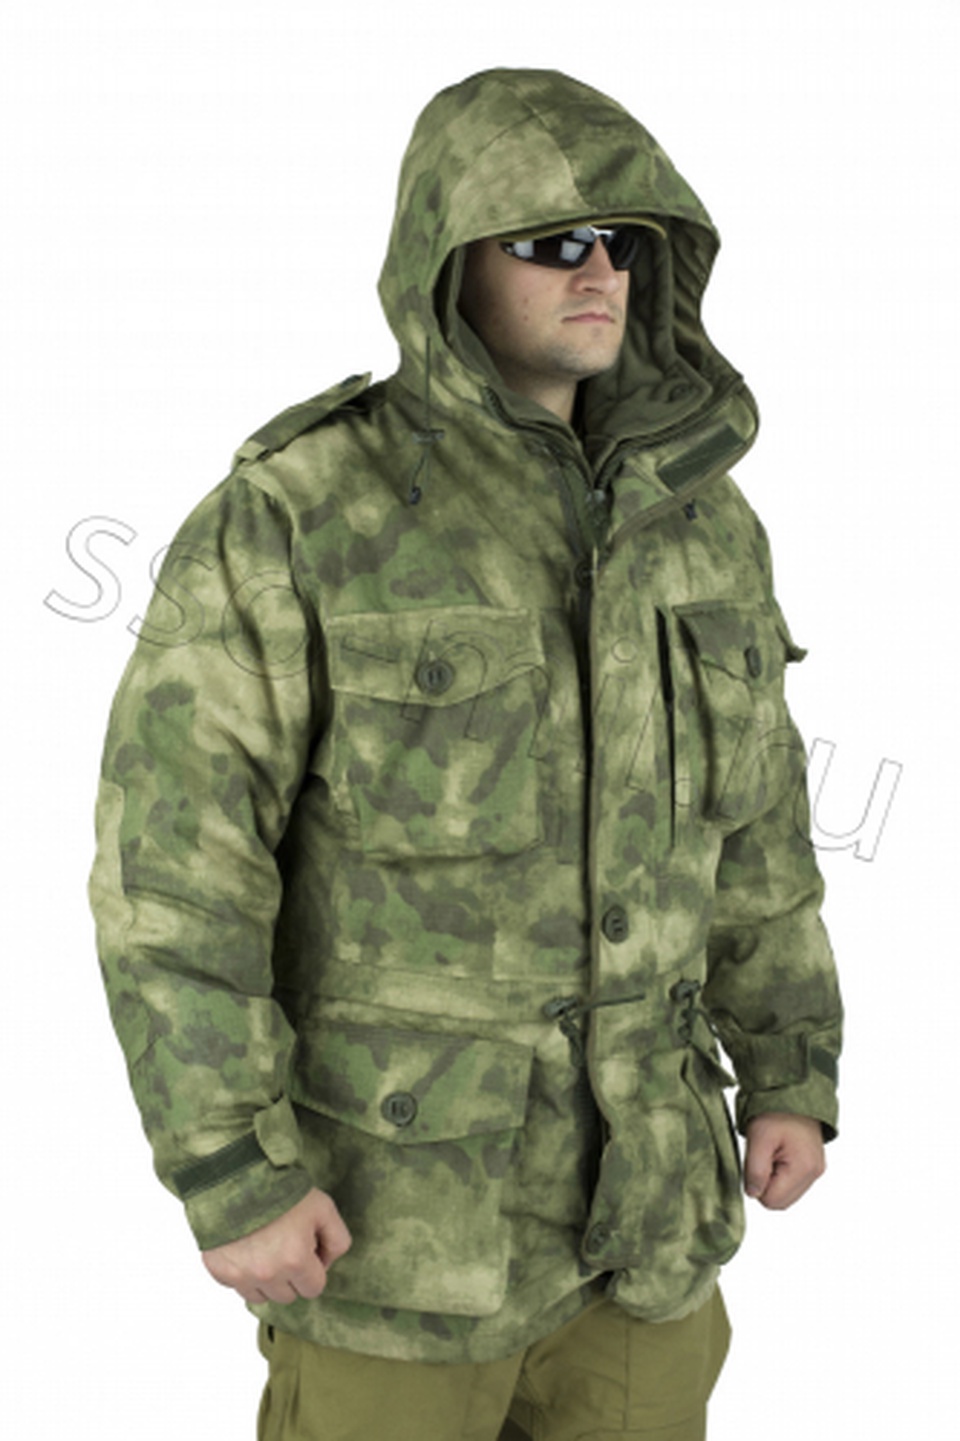 Куртка МДД 3. Куртка морского десантника зимняя СоюзСпецОснащение - 9 700 ₽, заказать онлайн.